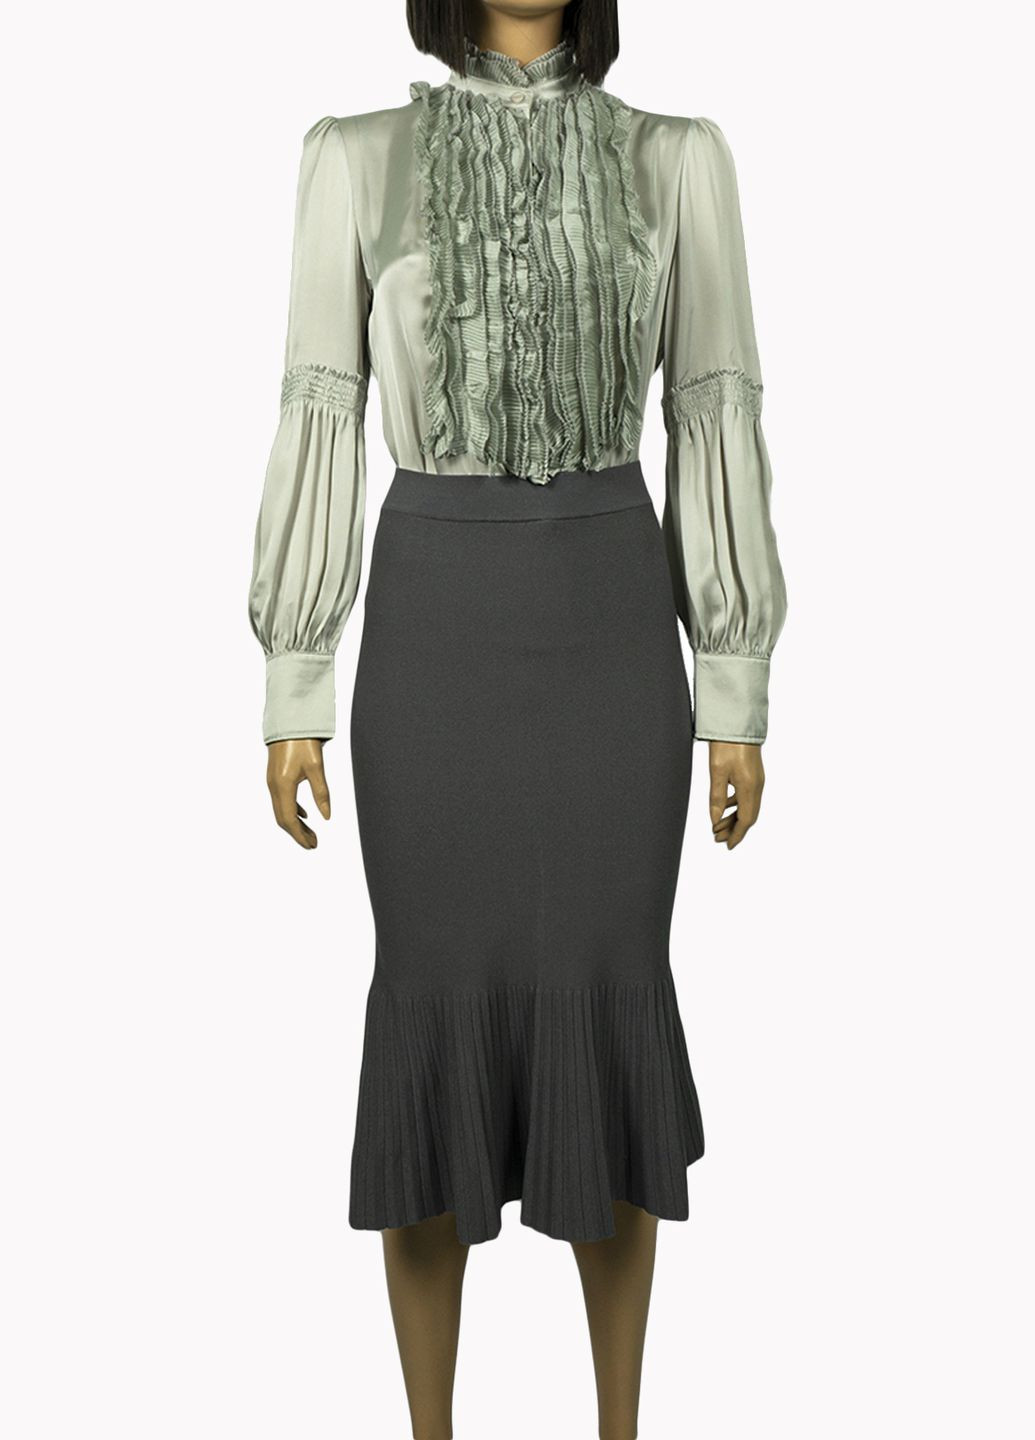 Салатовая демисезонная женская блуза с жабо lw-906003 салатовый Lowett